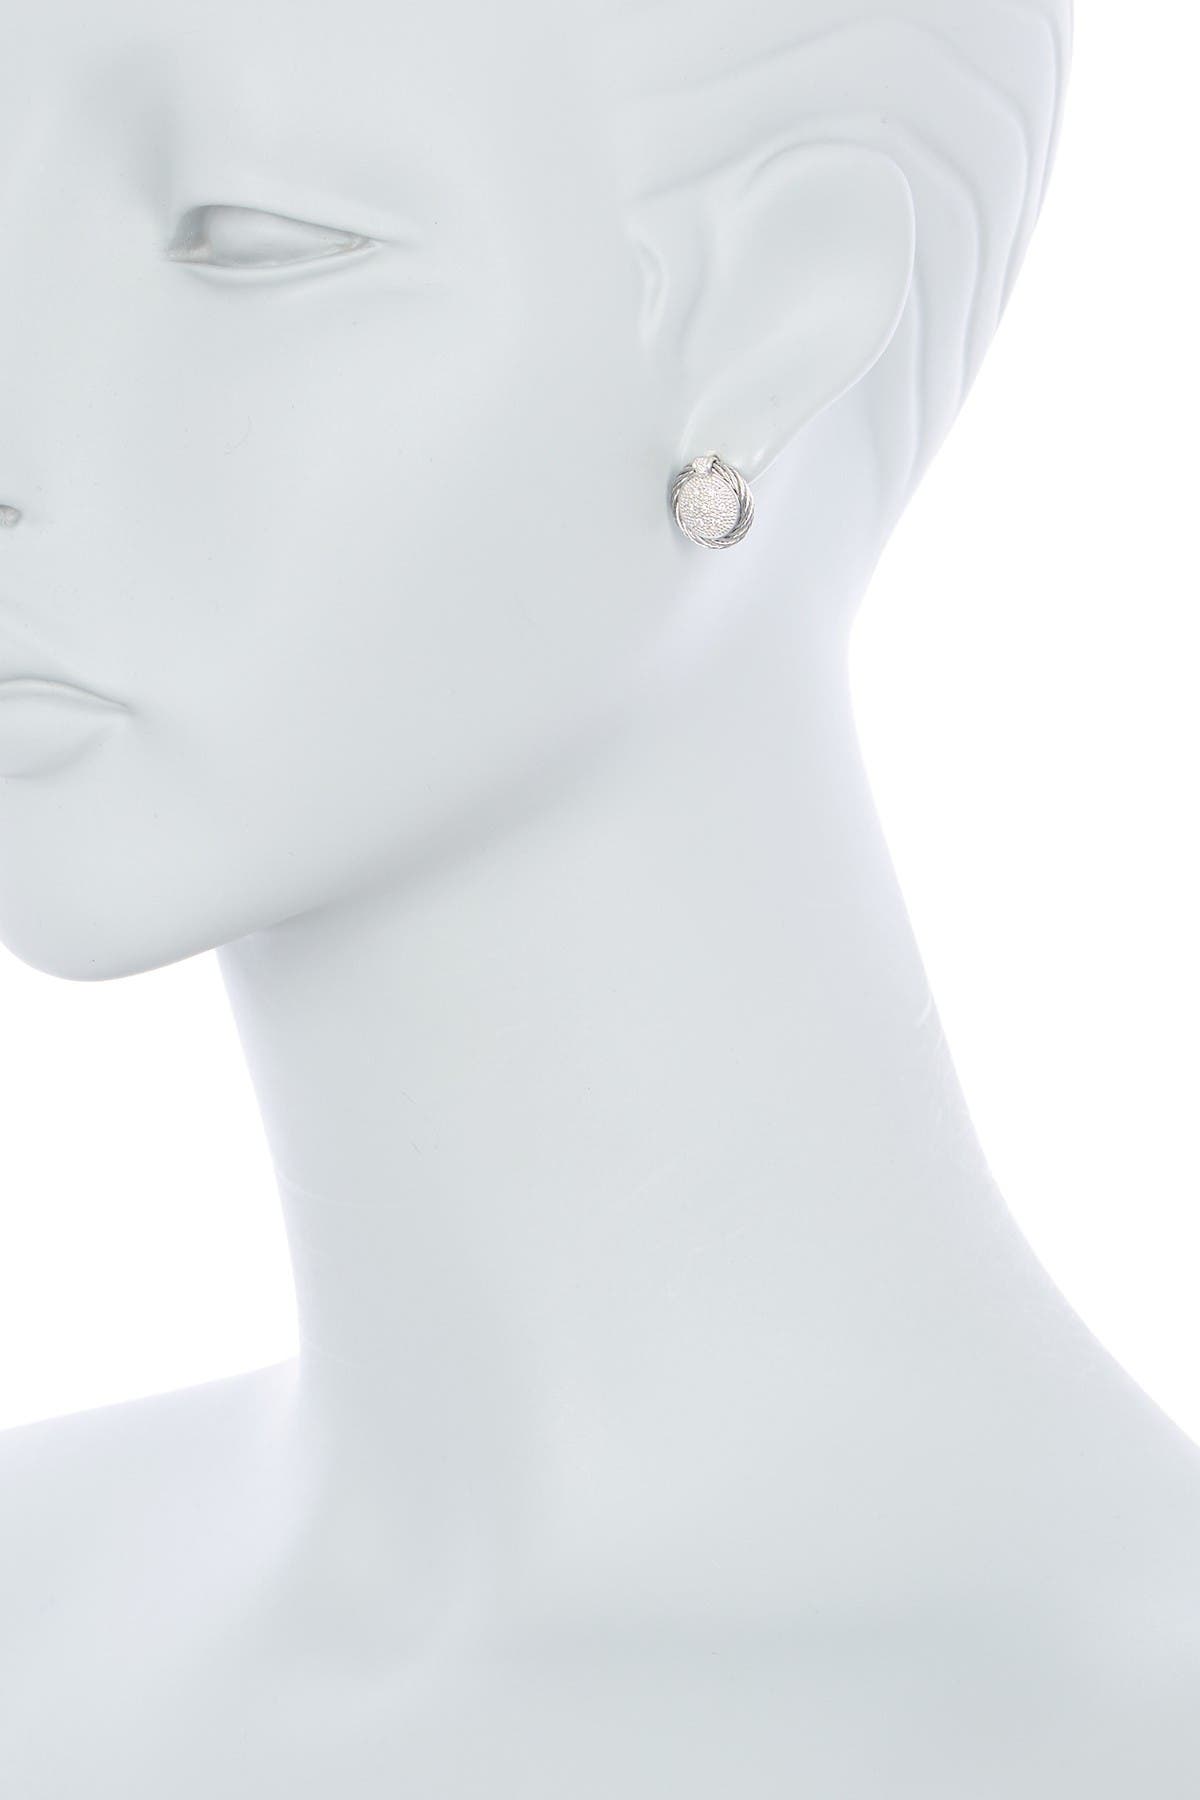 Alor 14k White Gold & Stainless Steel Diamond Stud Earrings In Natural